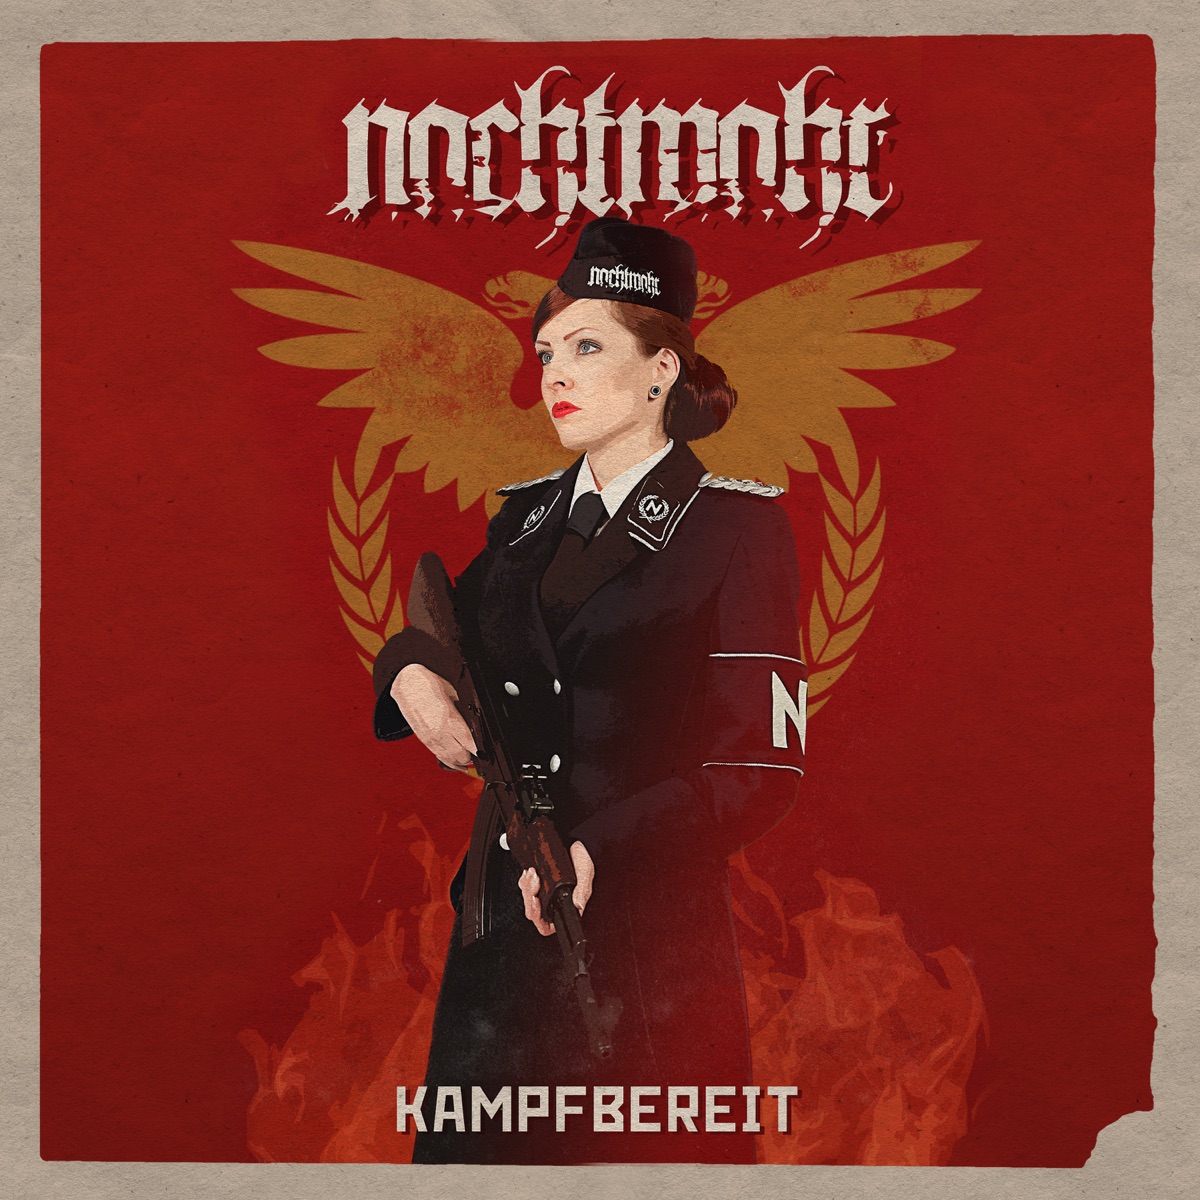 Mädchen in Uniform - Album by Nachtmahr - Apple Music